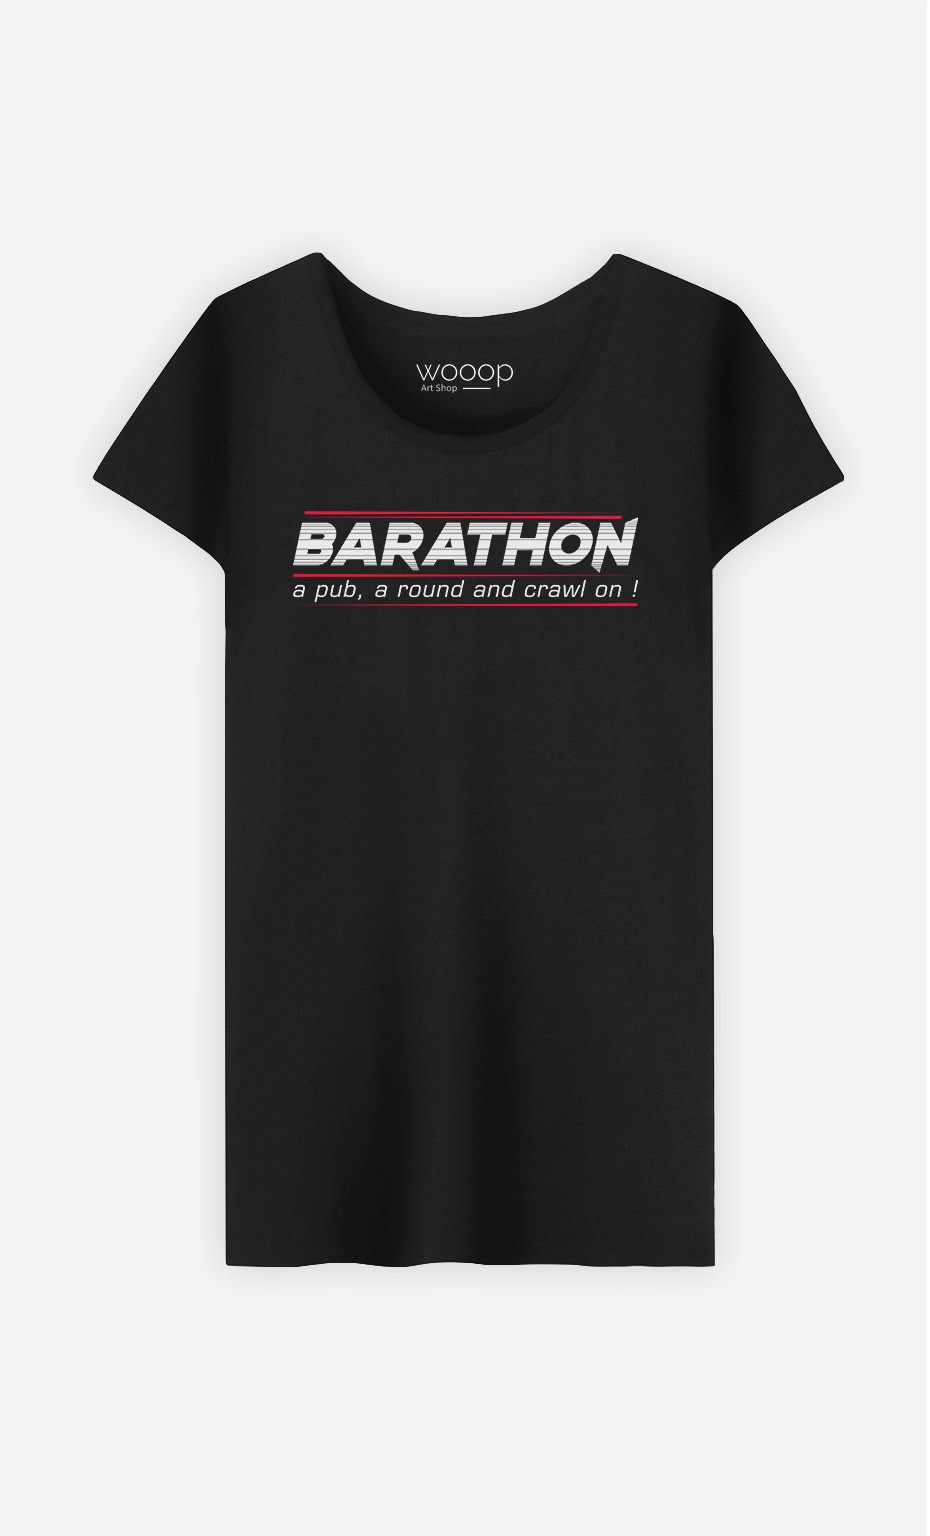 T-Shirt Barathon